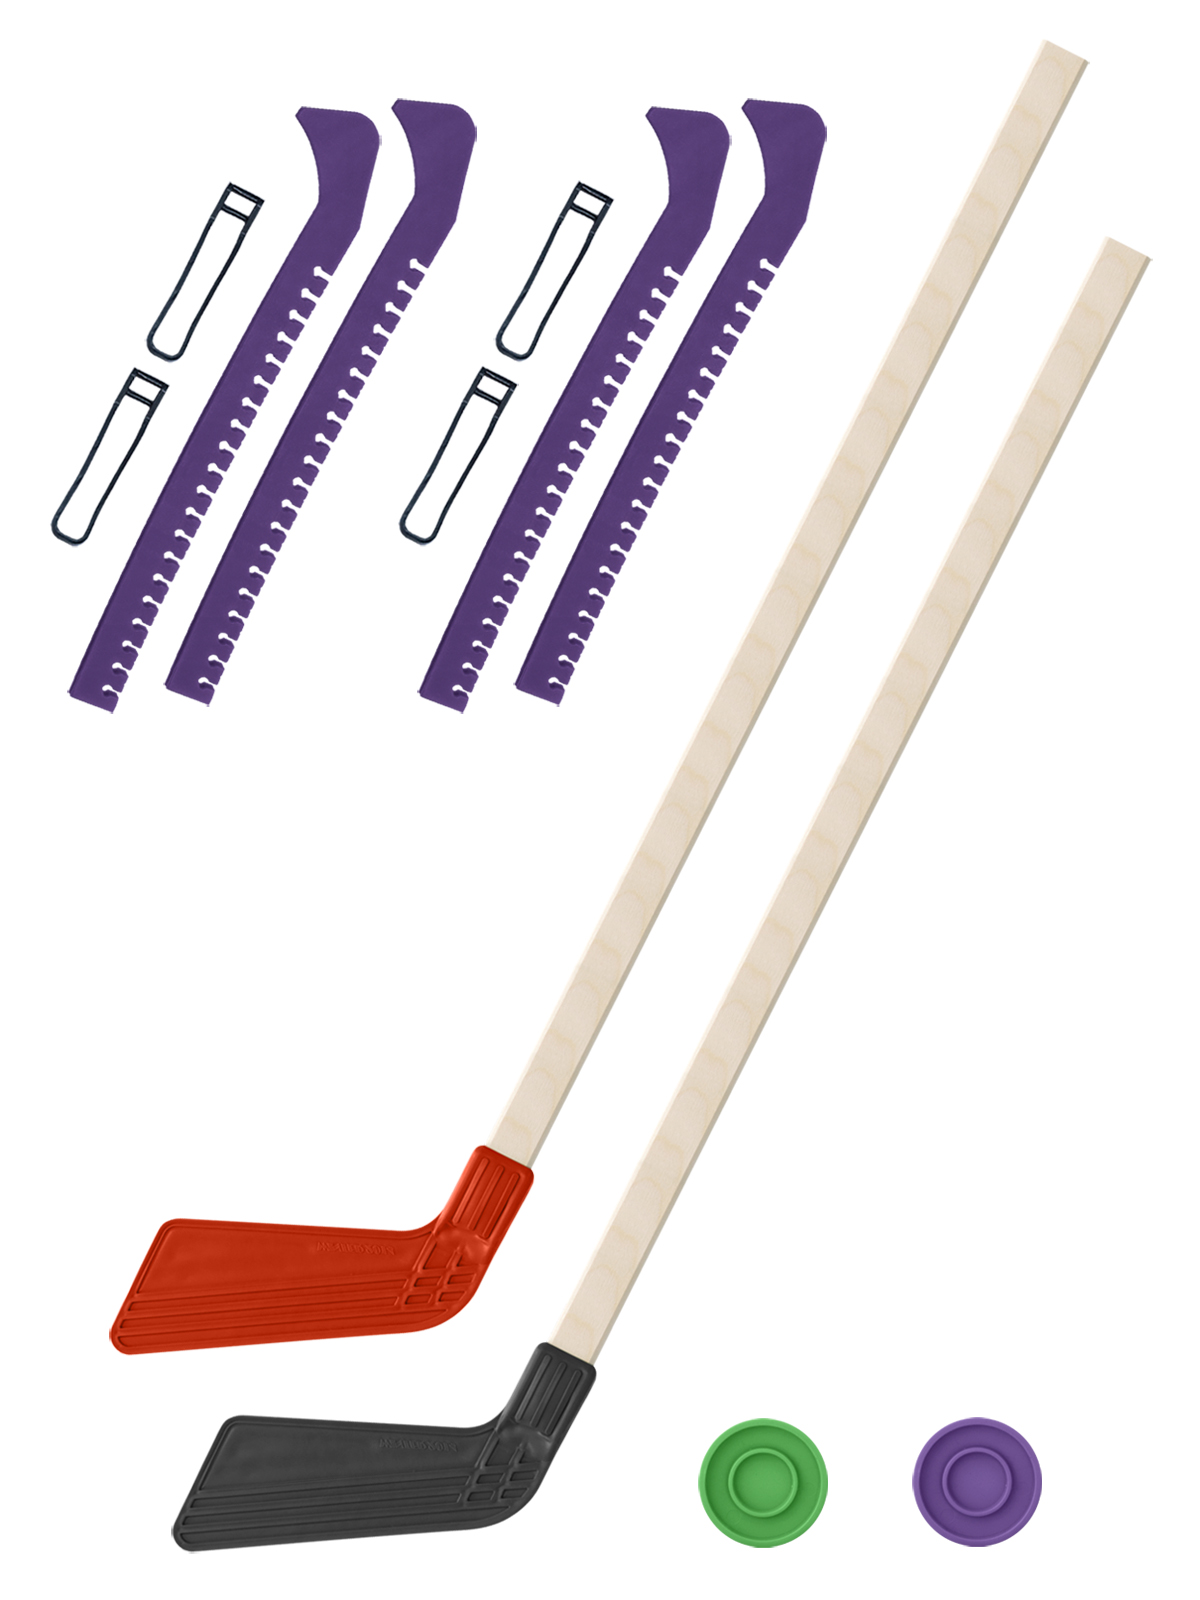 Хоккейный набор Задира-плюс клюшка детская(крас+чер)2шт+2 шайбы+чехлы для коньков фиол 2шт